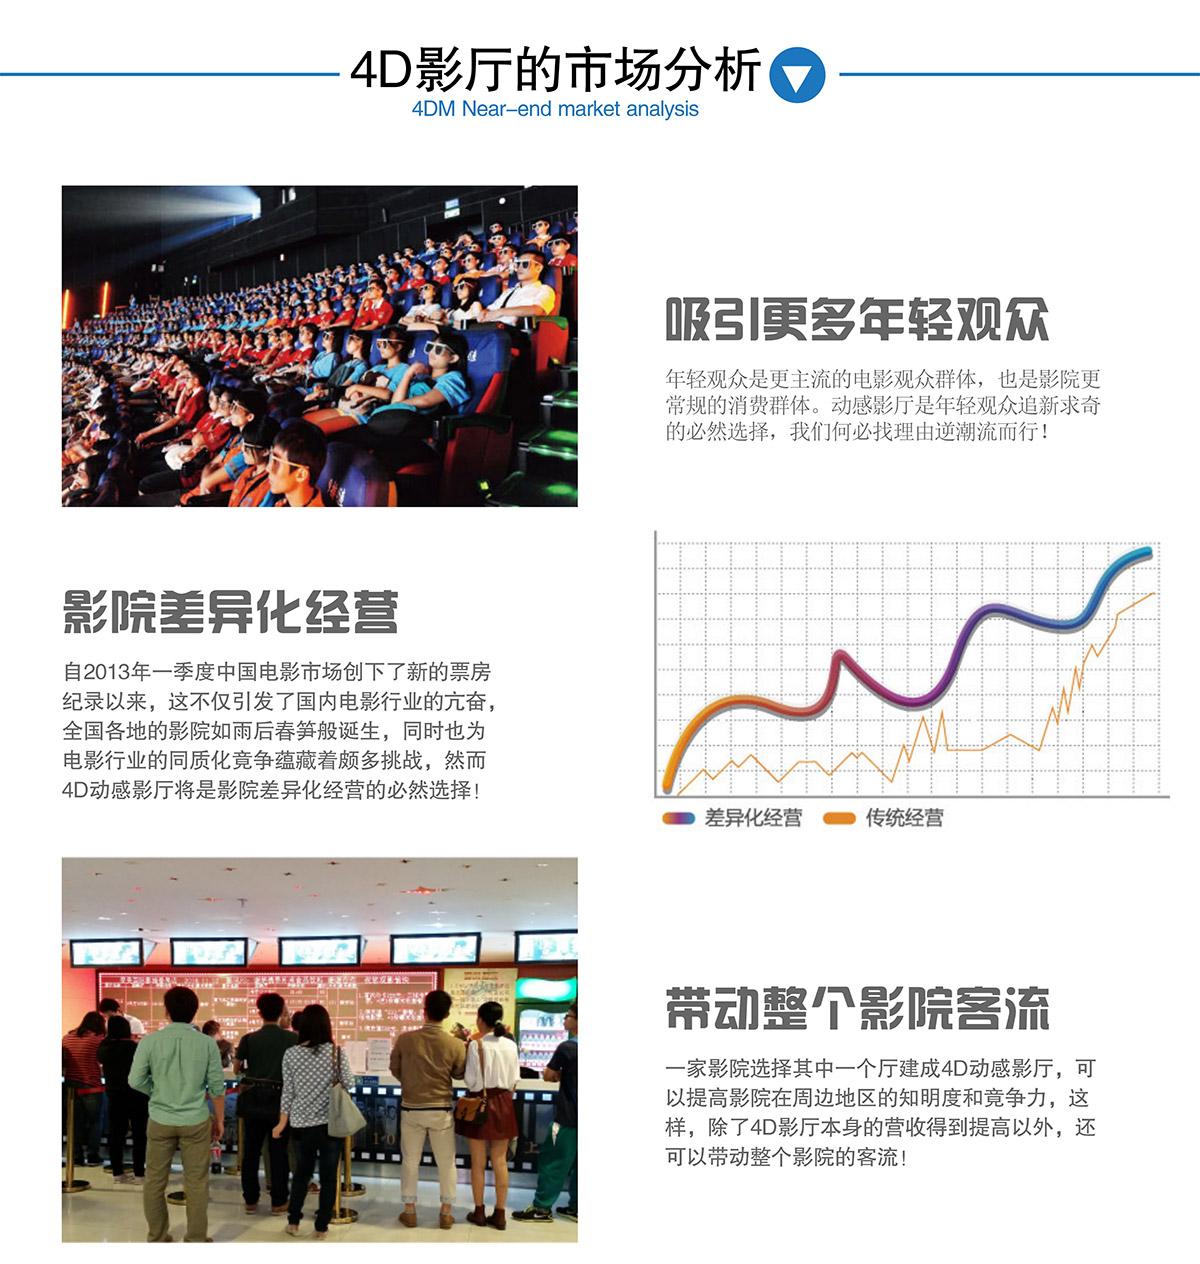 广东省广州奇影幻境4DM影厅的市场分析.jpg